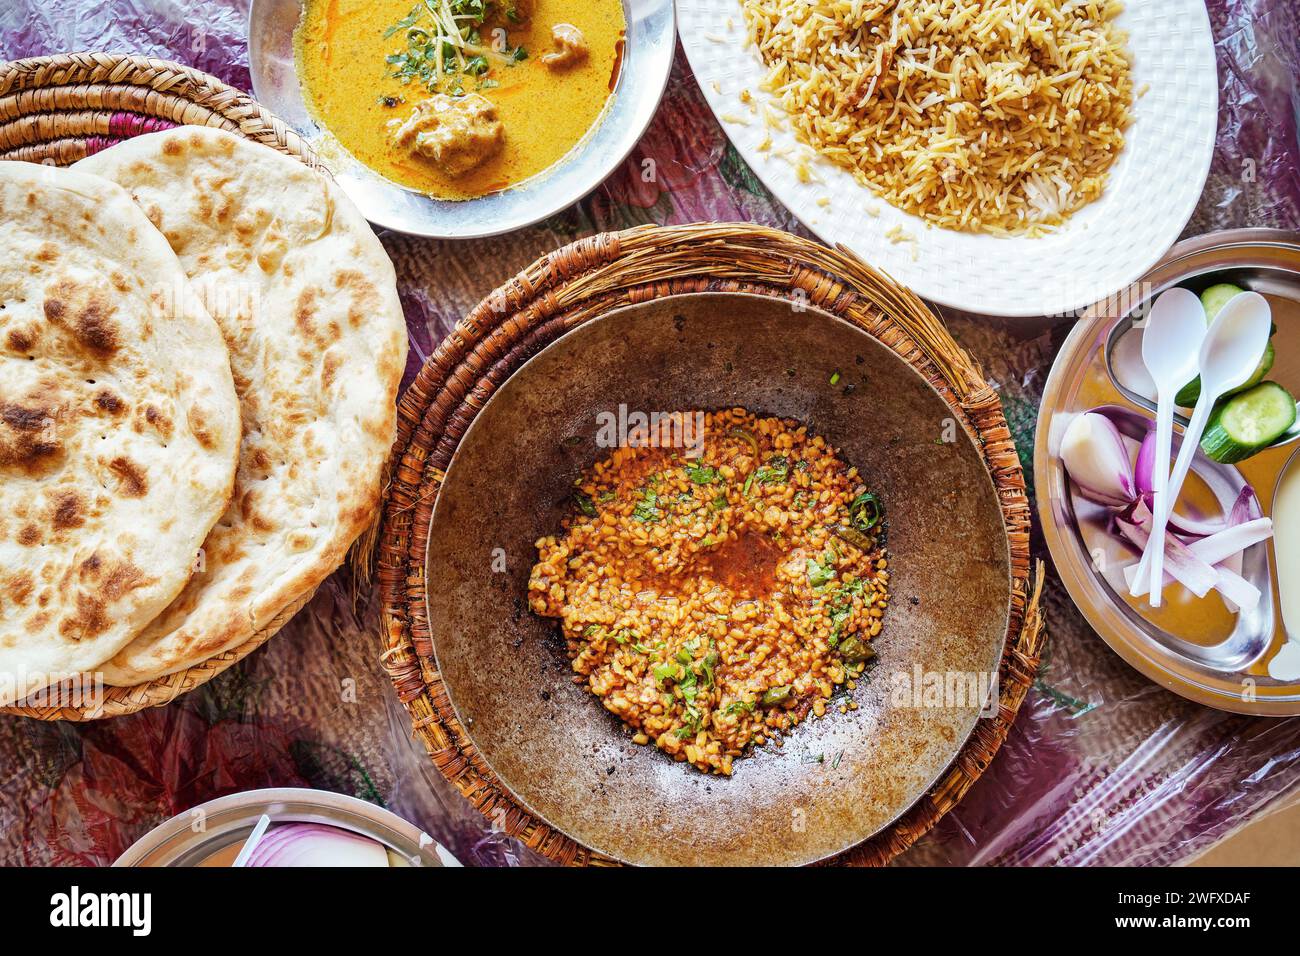 Typisch arabisches Essen im einfachen pakistanischen Restaurant, Linsen, Pitta Fladenbrot, Reis und Suppe - Blick von oben Stockfoto